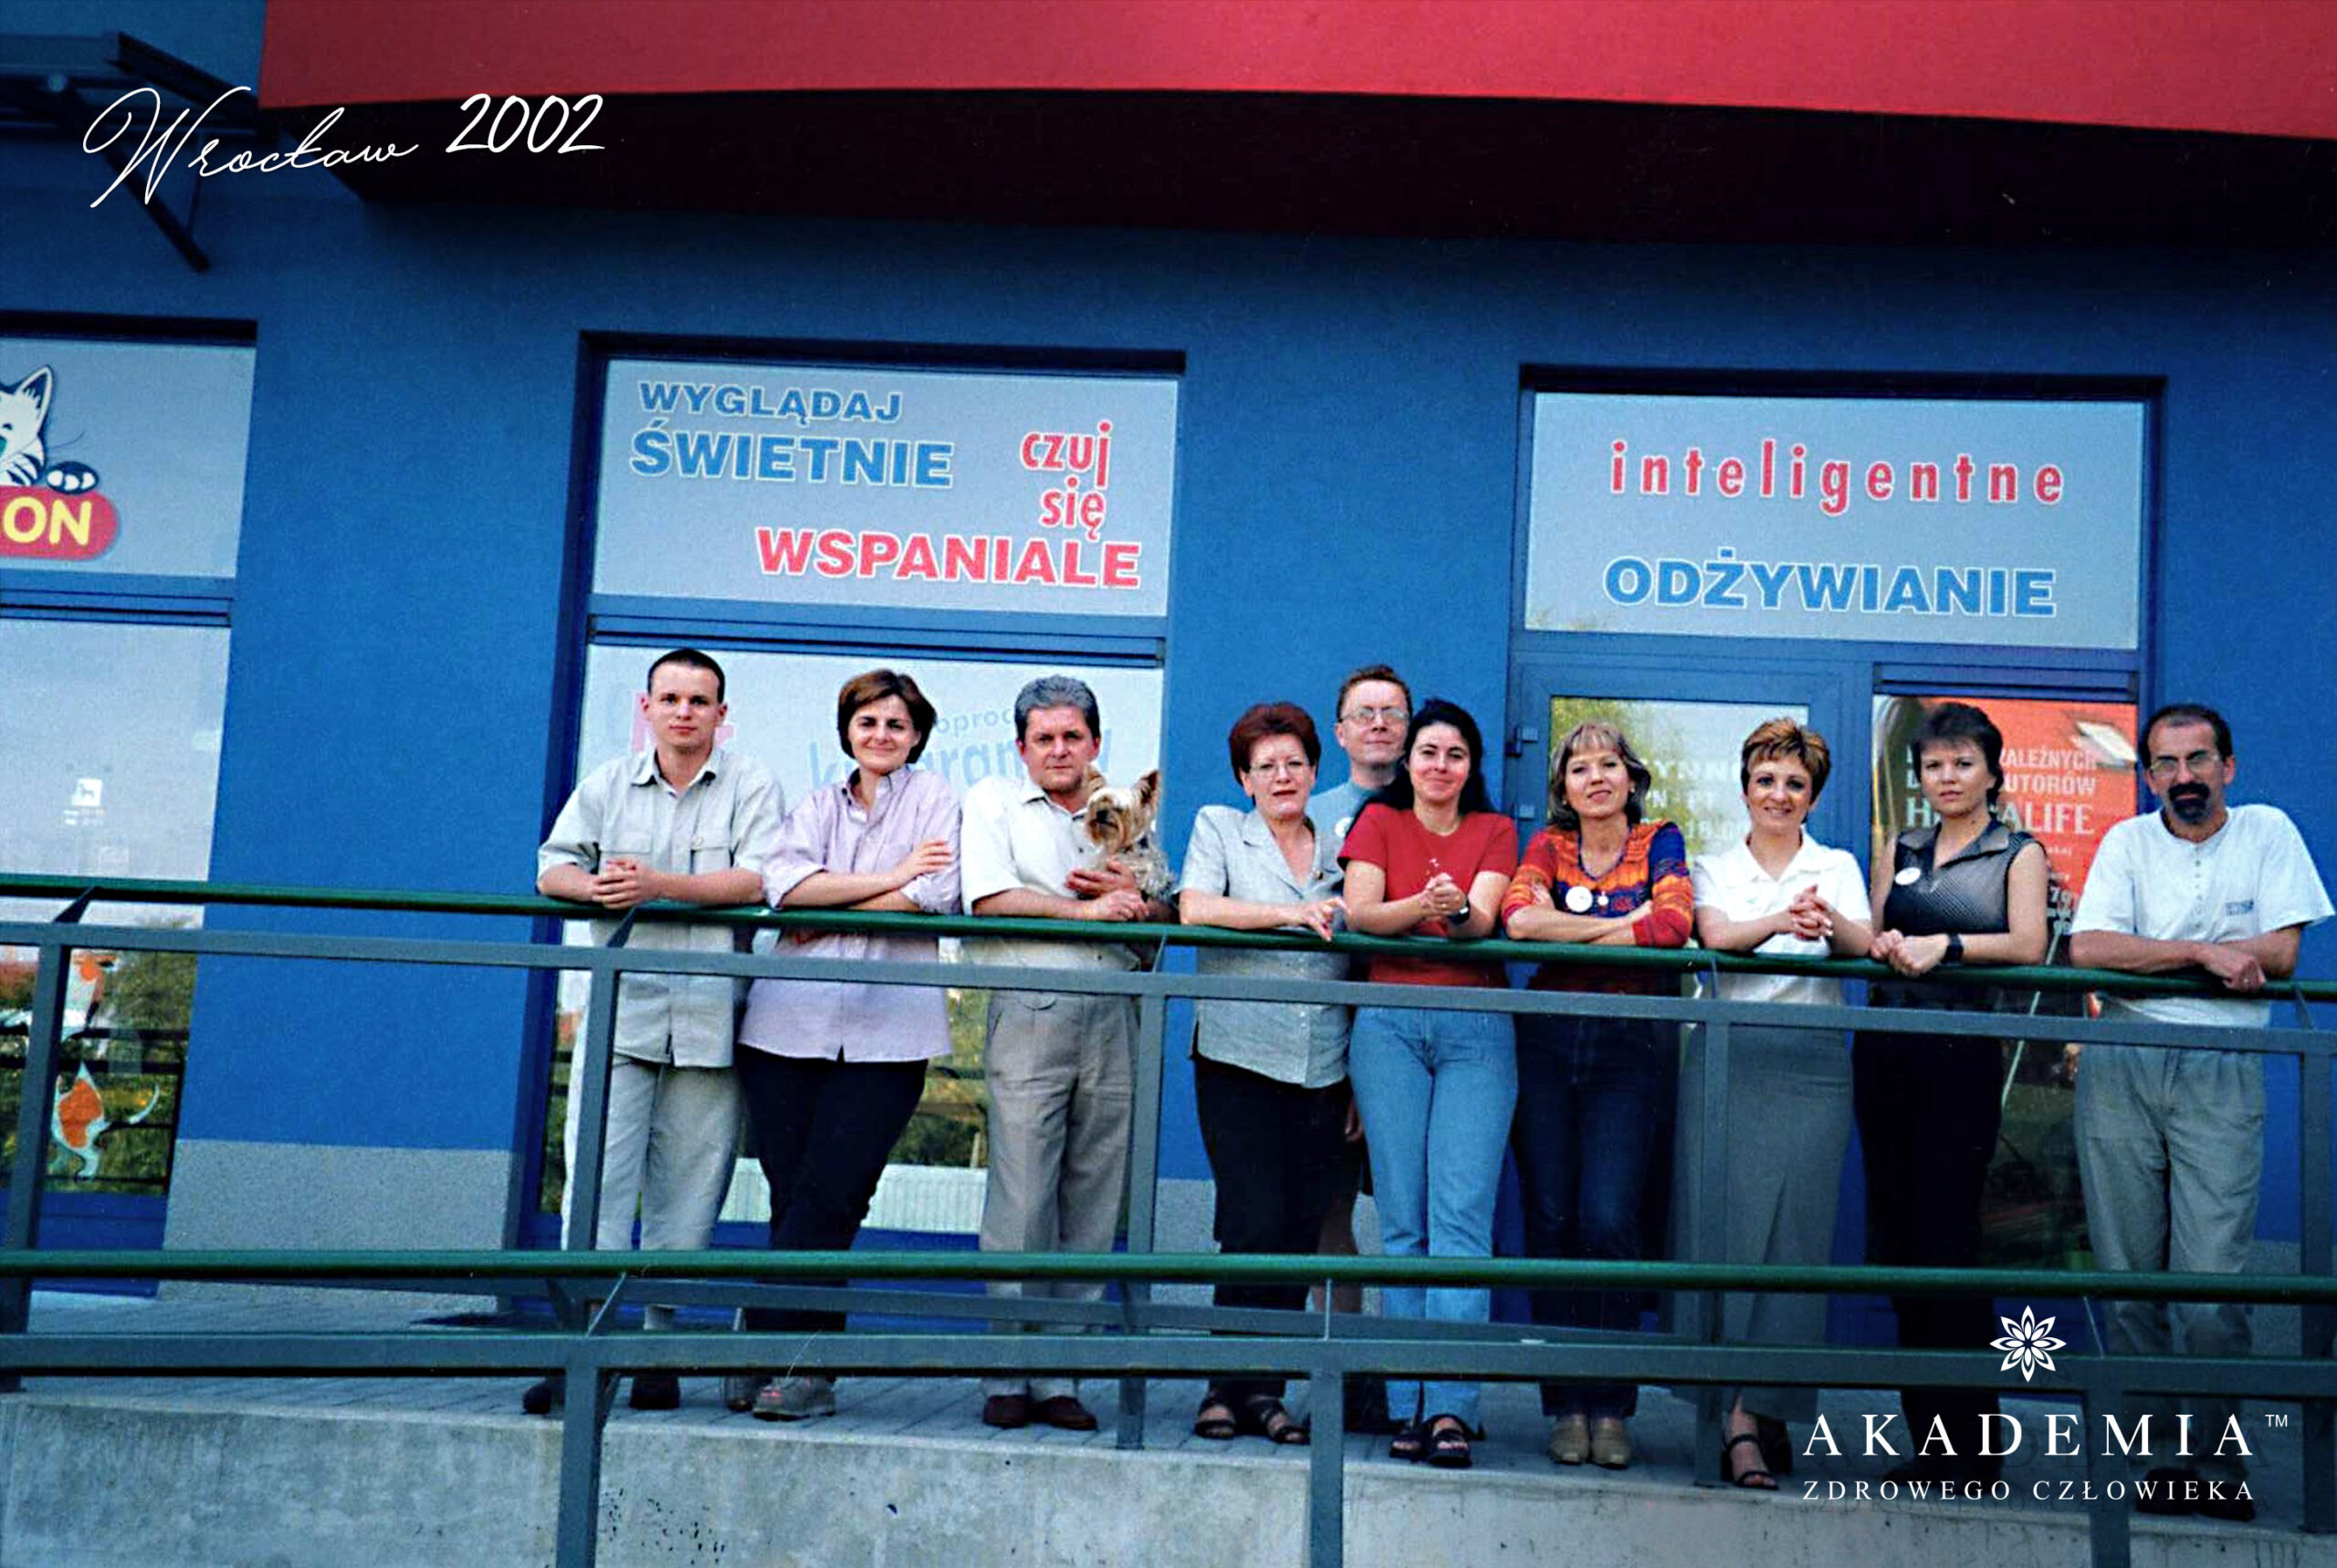 Akademia Zdrowego Człowieka, Wrocław, 2002